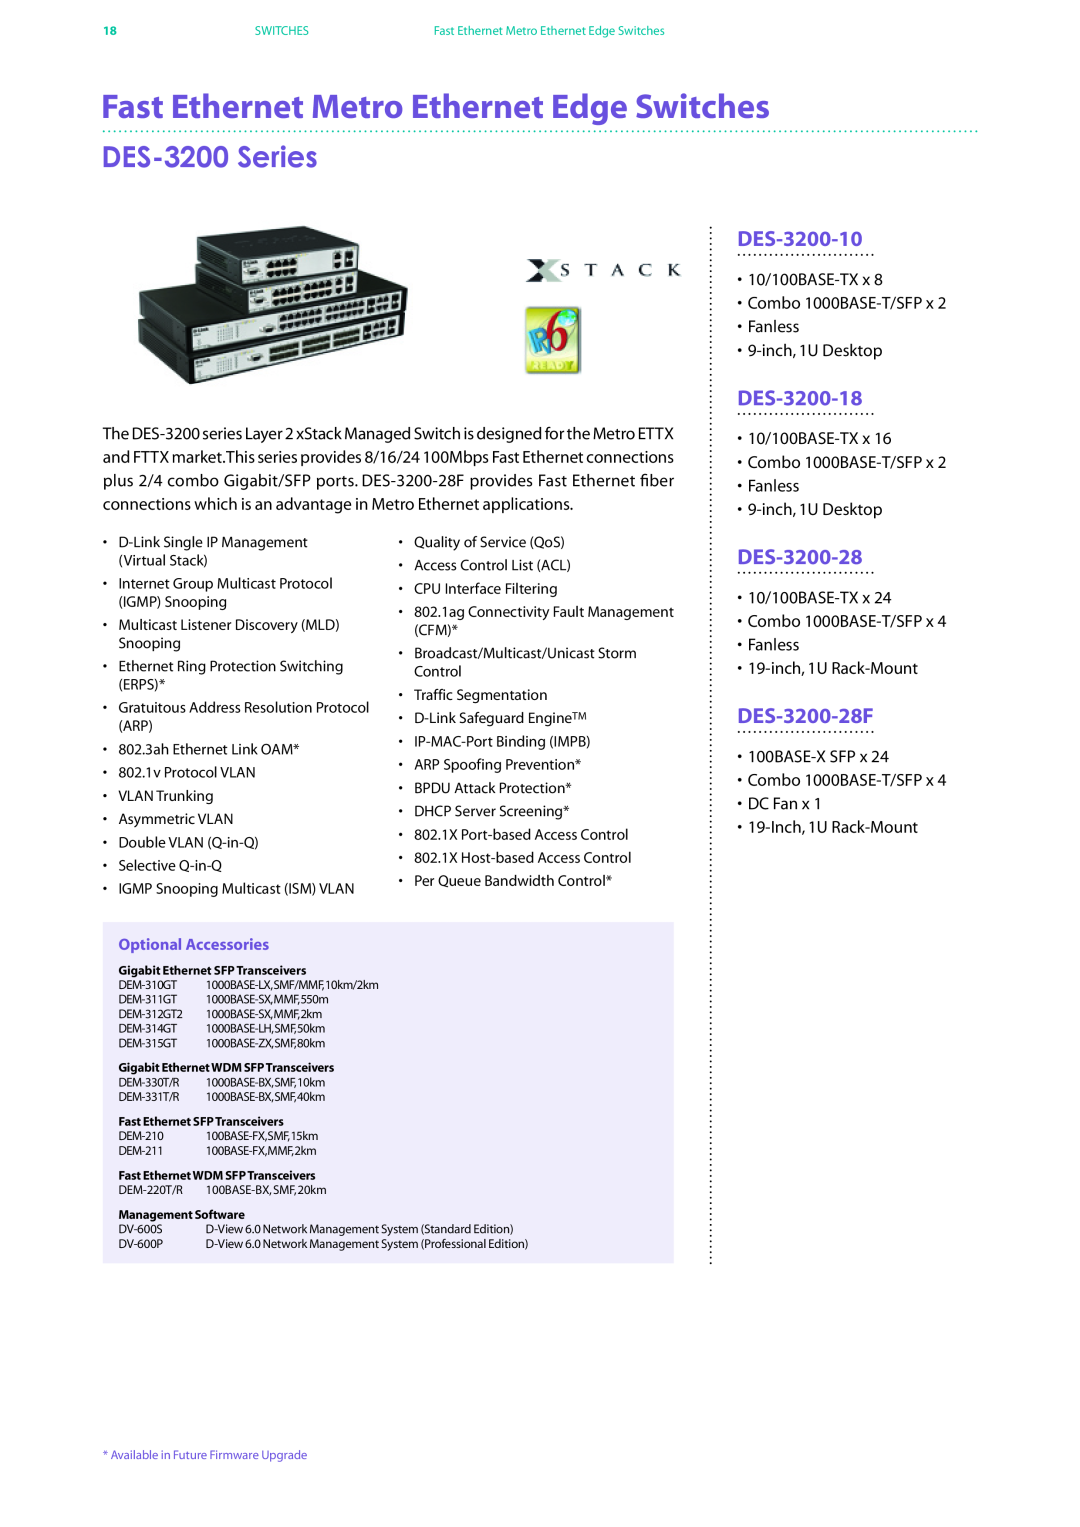 D-Link DES-7200 manual Fast Ethernet Metro Ethernet Edge Switches, DES-3200 Series, DES-3200-10, DES-3200-18, DES-3200-28 